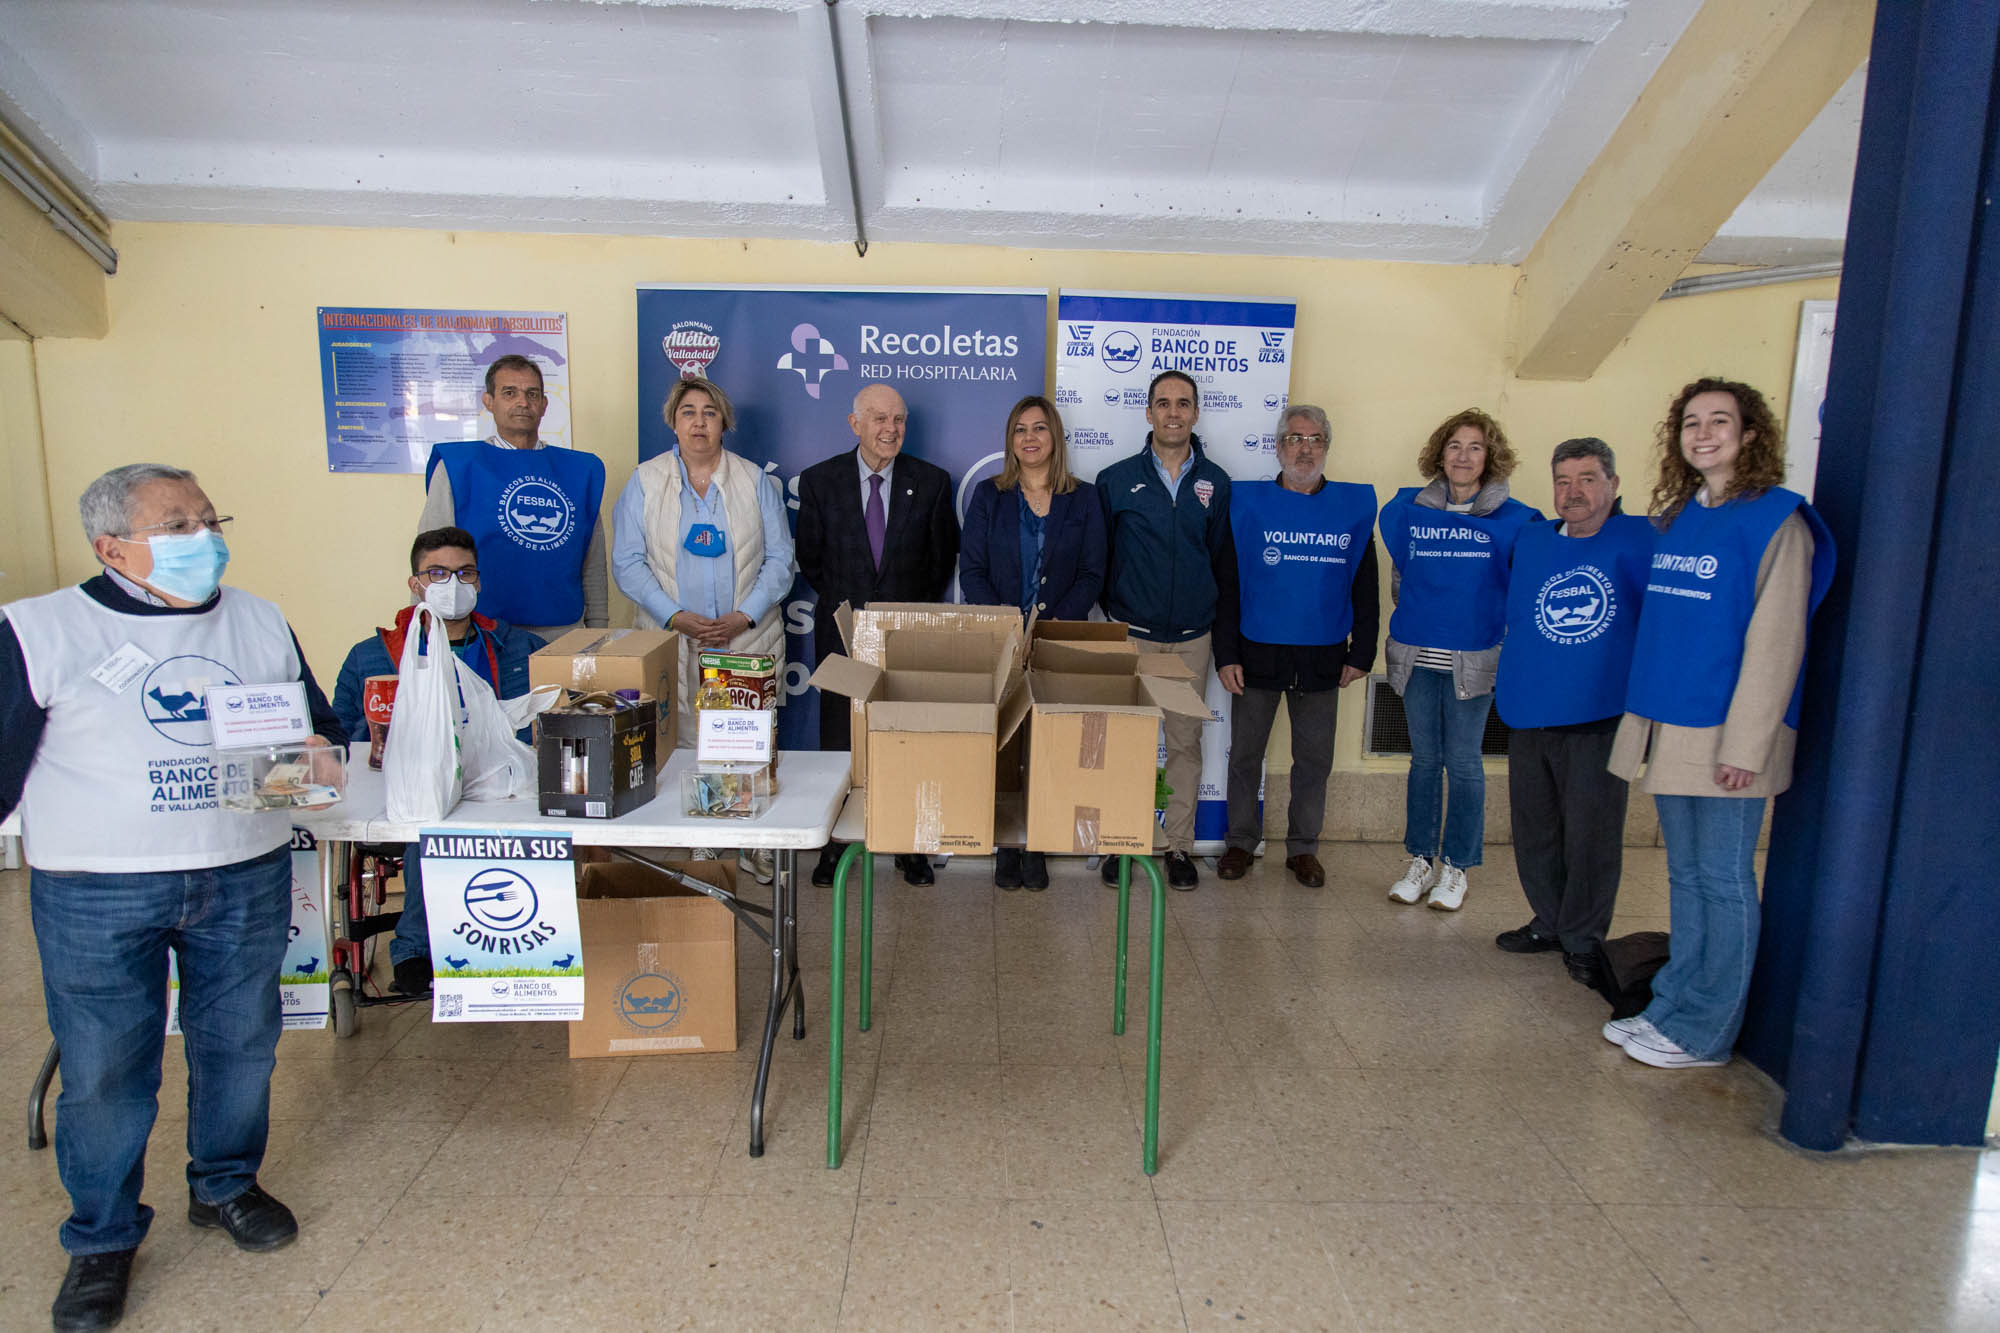 Recoletas Red Hospitalaria entrega 2.000€ a la Fundación Banco de Alimentos Valladolid en apoyo de las personas más desfavorecidas | Galería 1 / 1